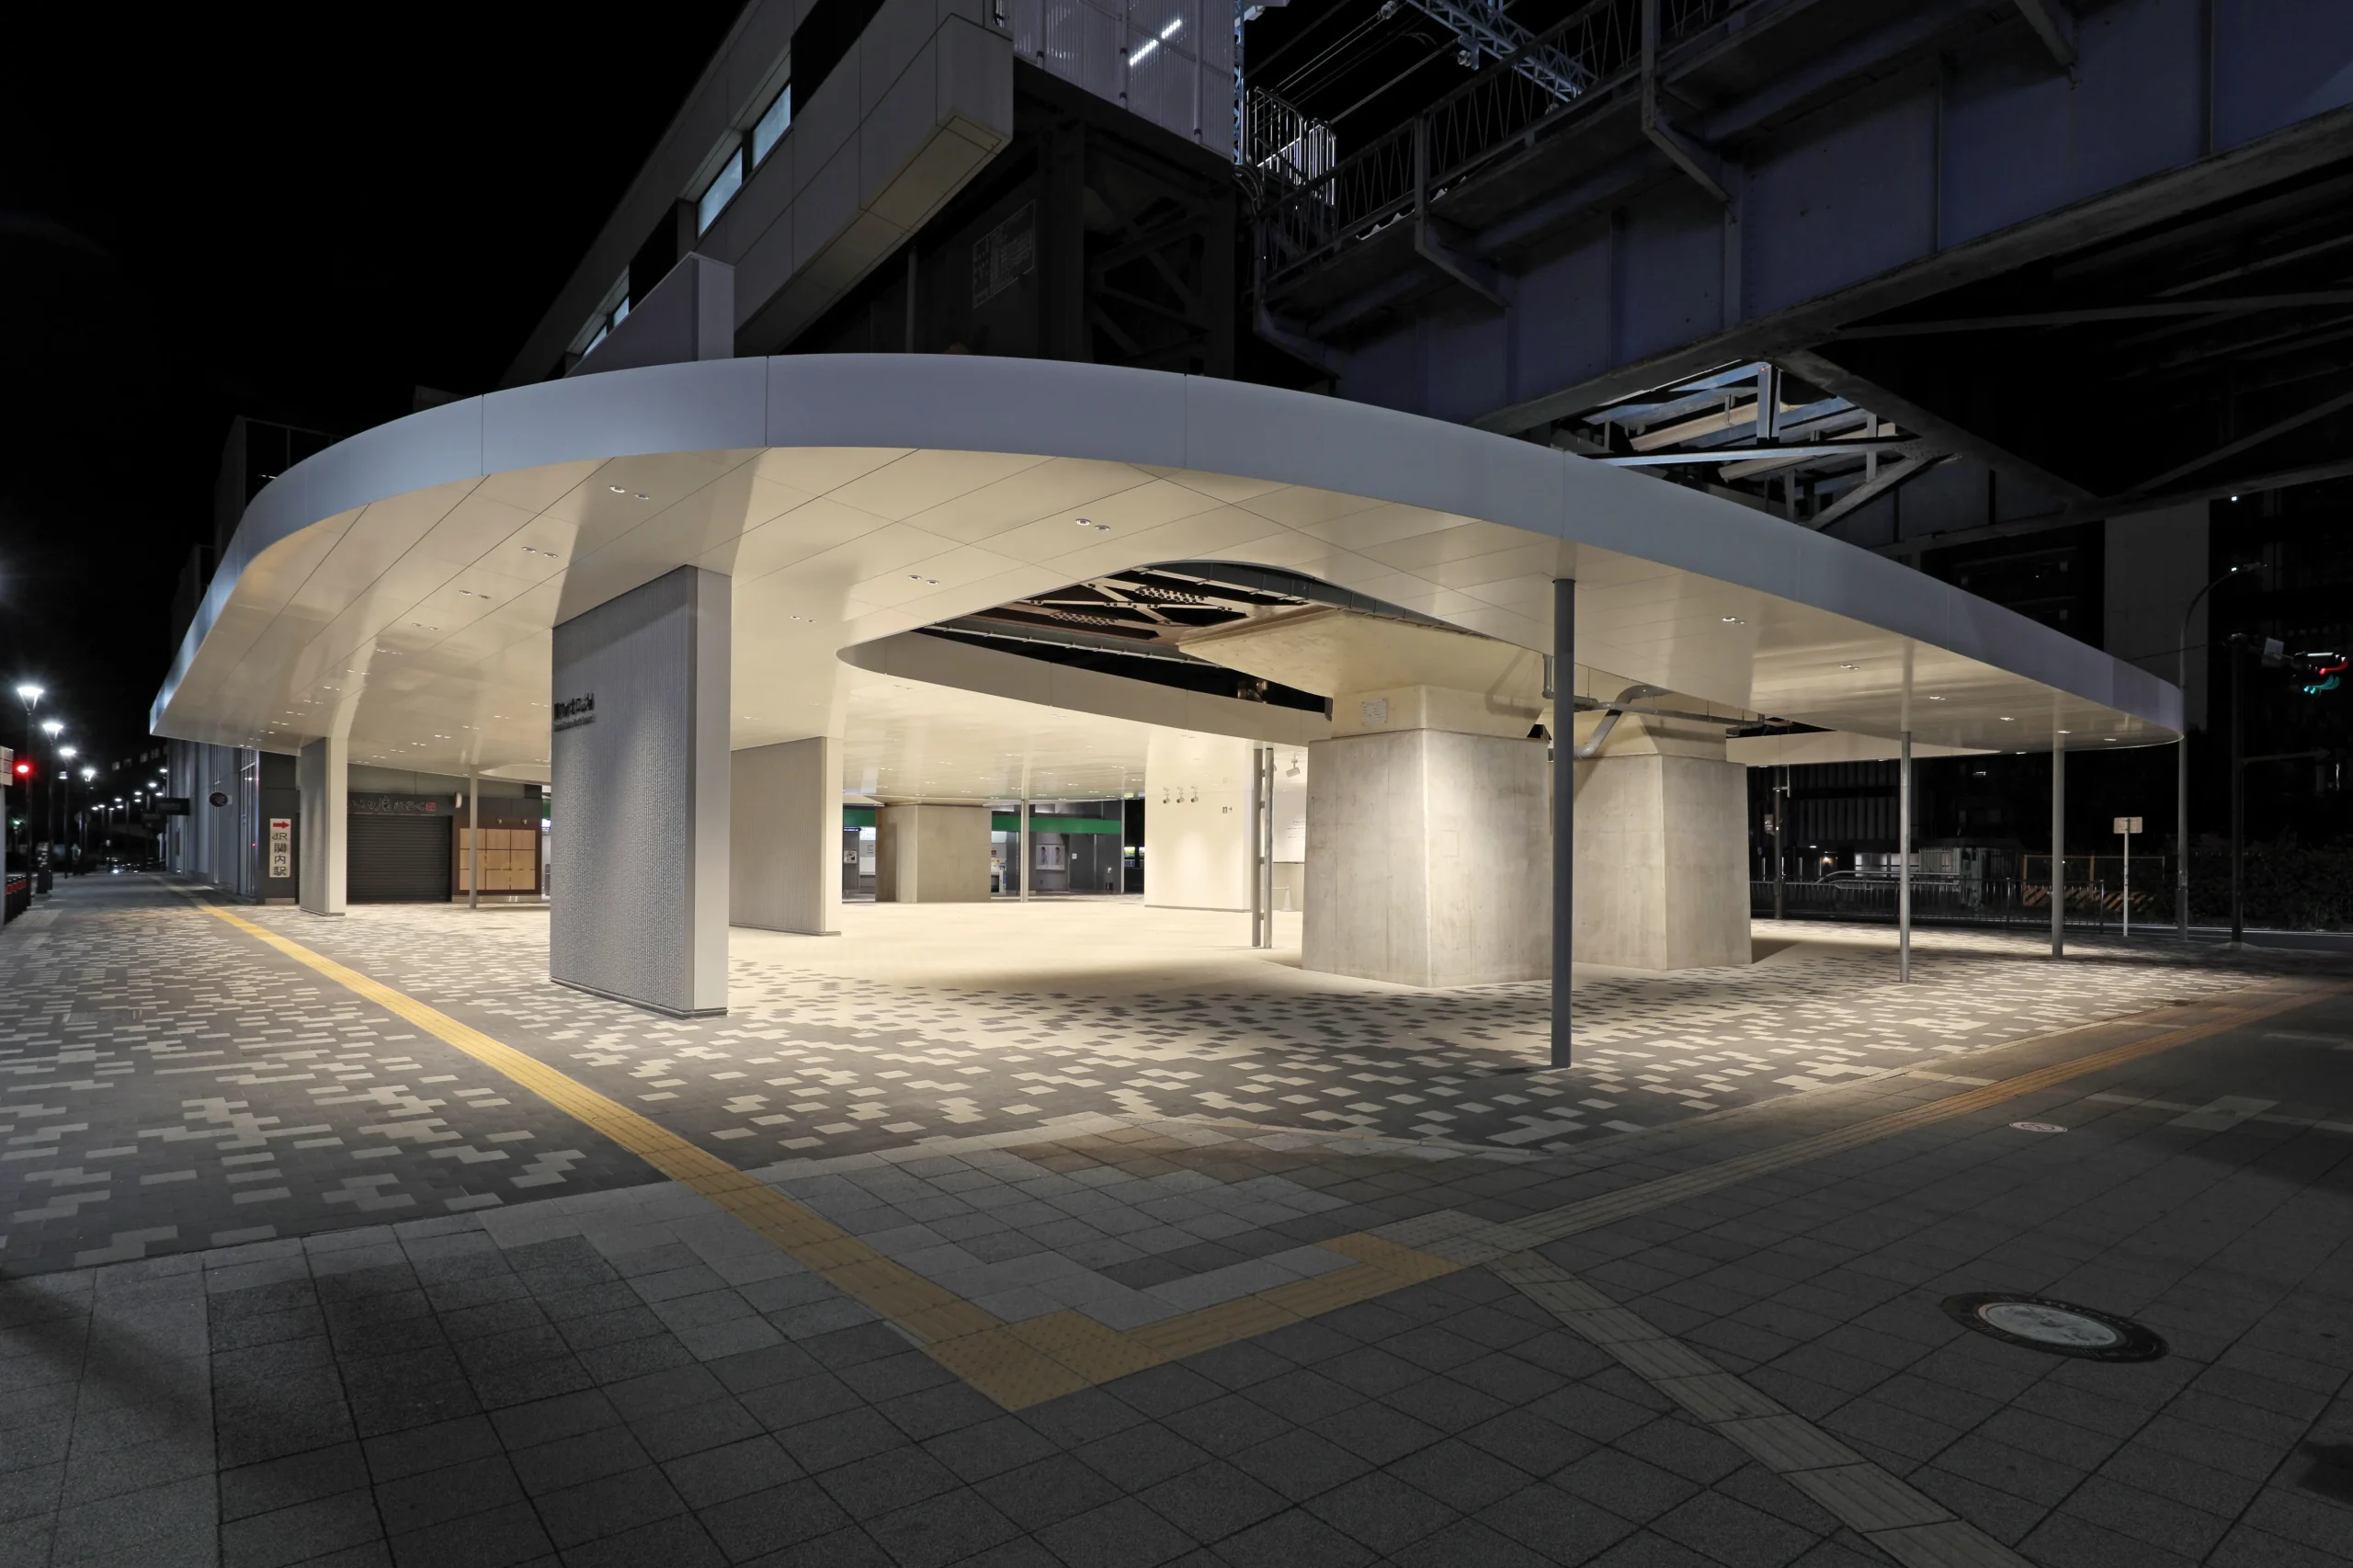 JR根岸線 関内駅歩行者広場屋根新設工事のサムネイル画像です